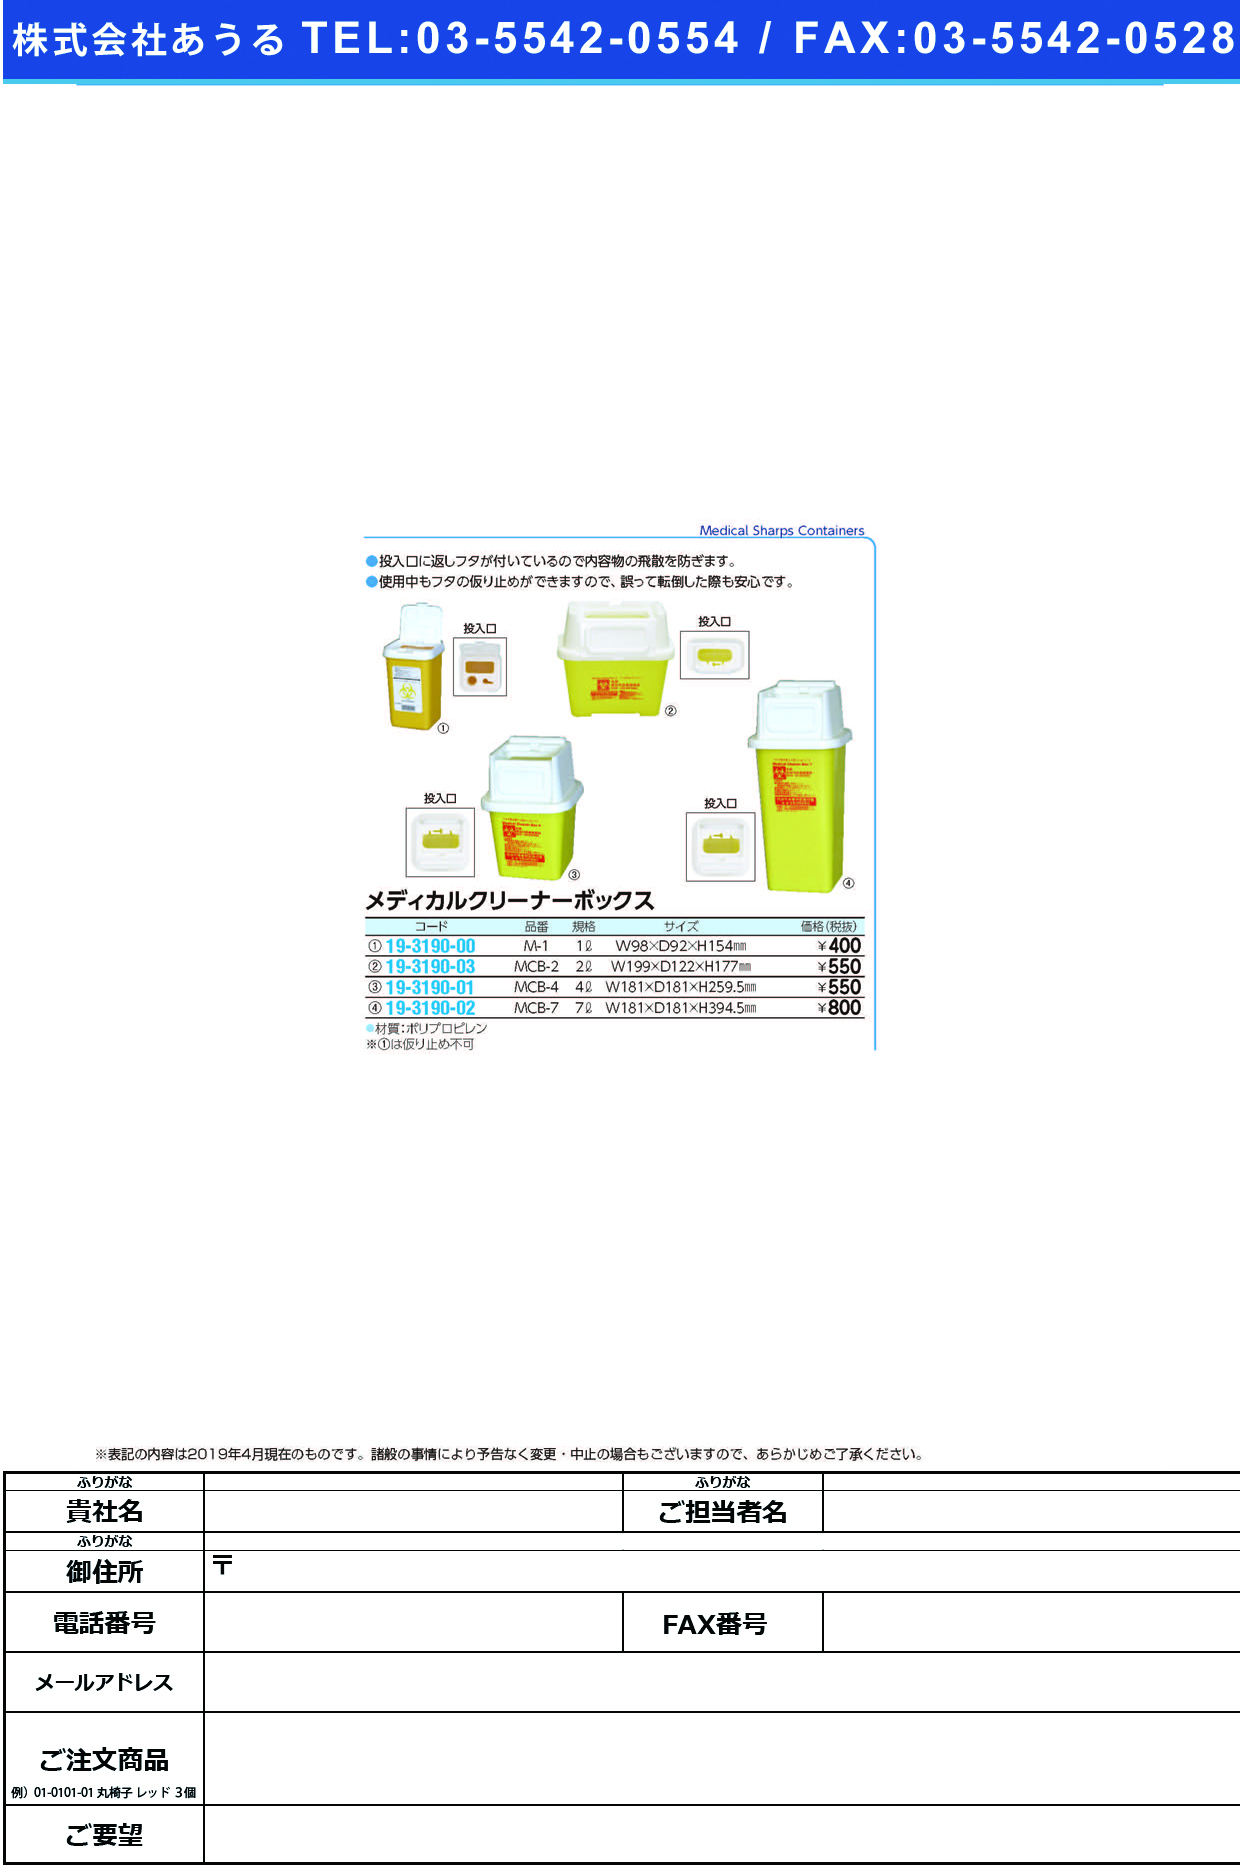 (19-3190-00)メディカルクリーナーボックス M-1(1L) ﾒﾃﾞｨｶﾙｸﾘｰﾅｰﾎﾞｯｸｽ【1個単位】【2019年カタログ商品】